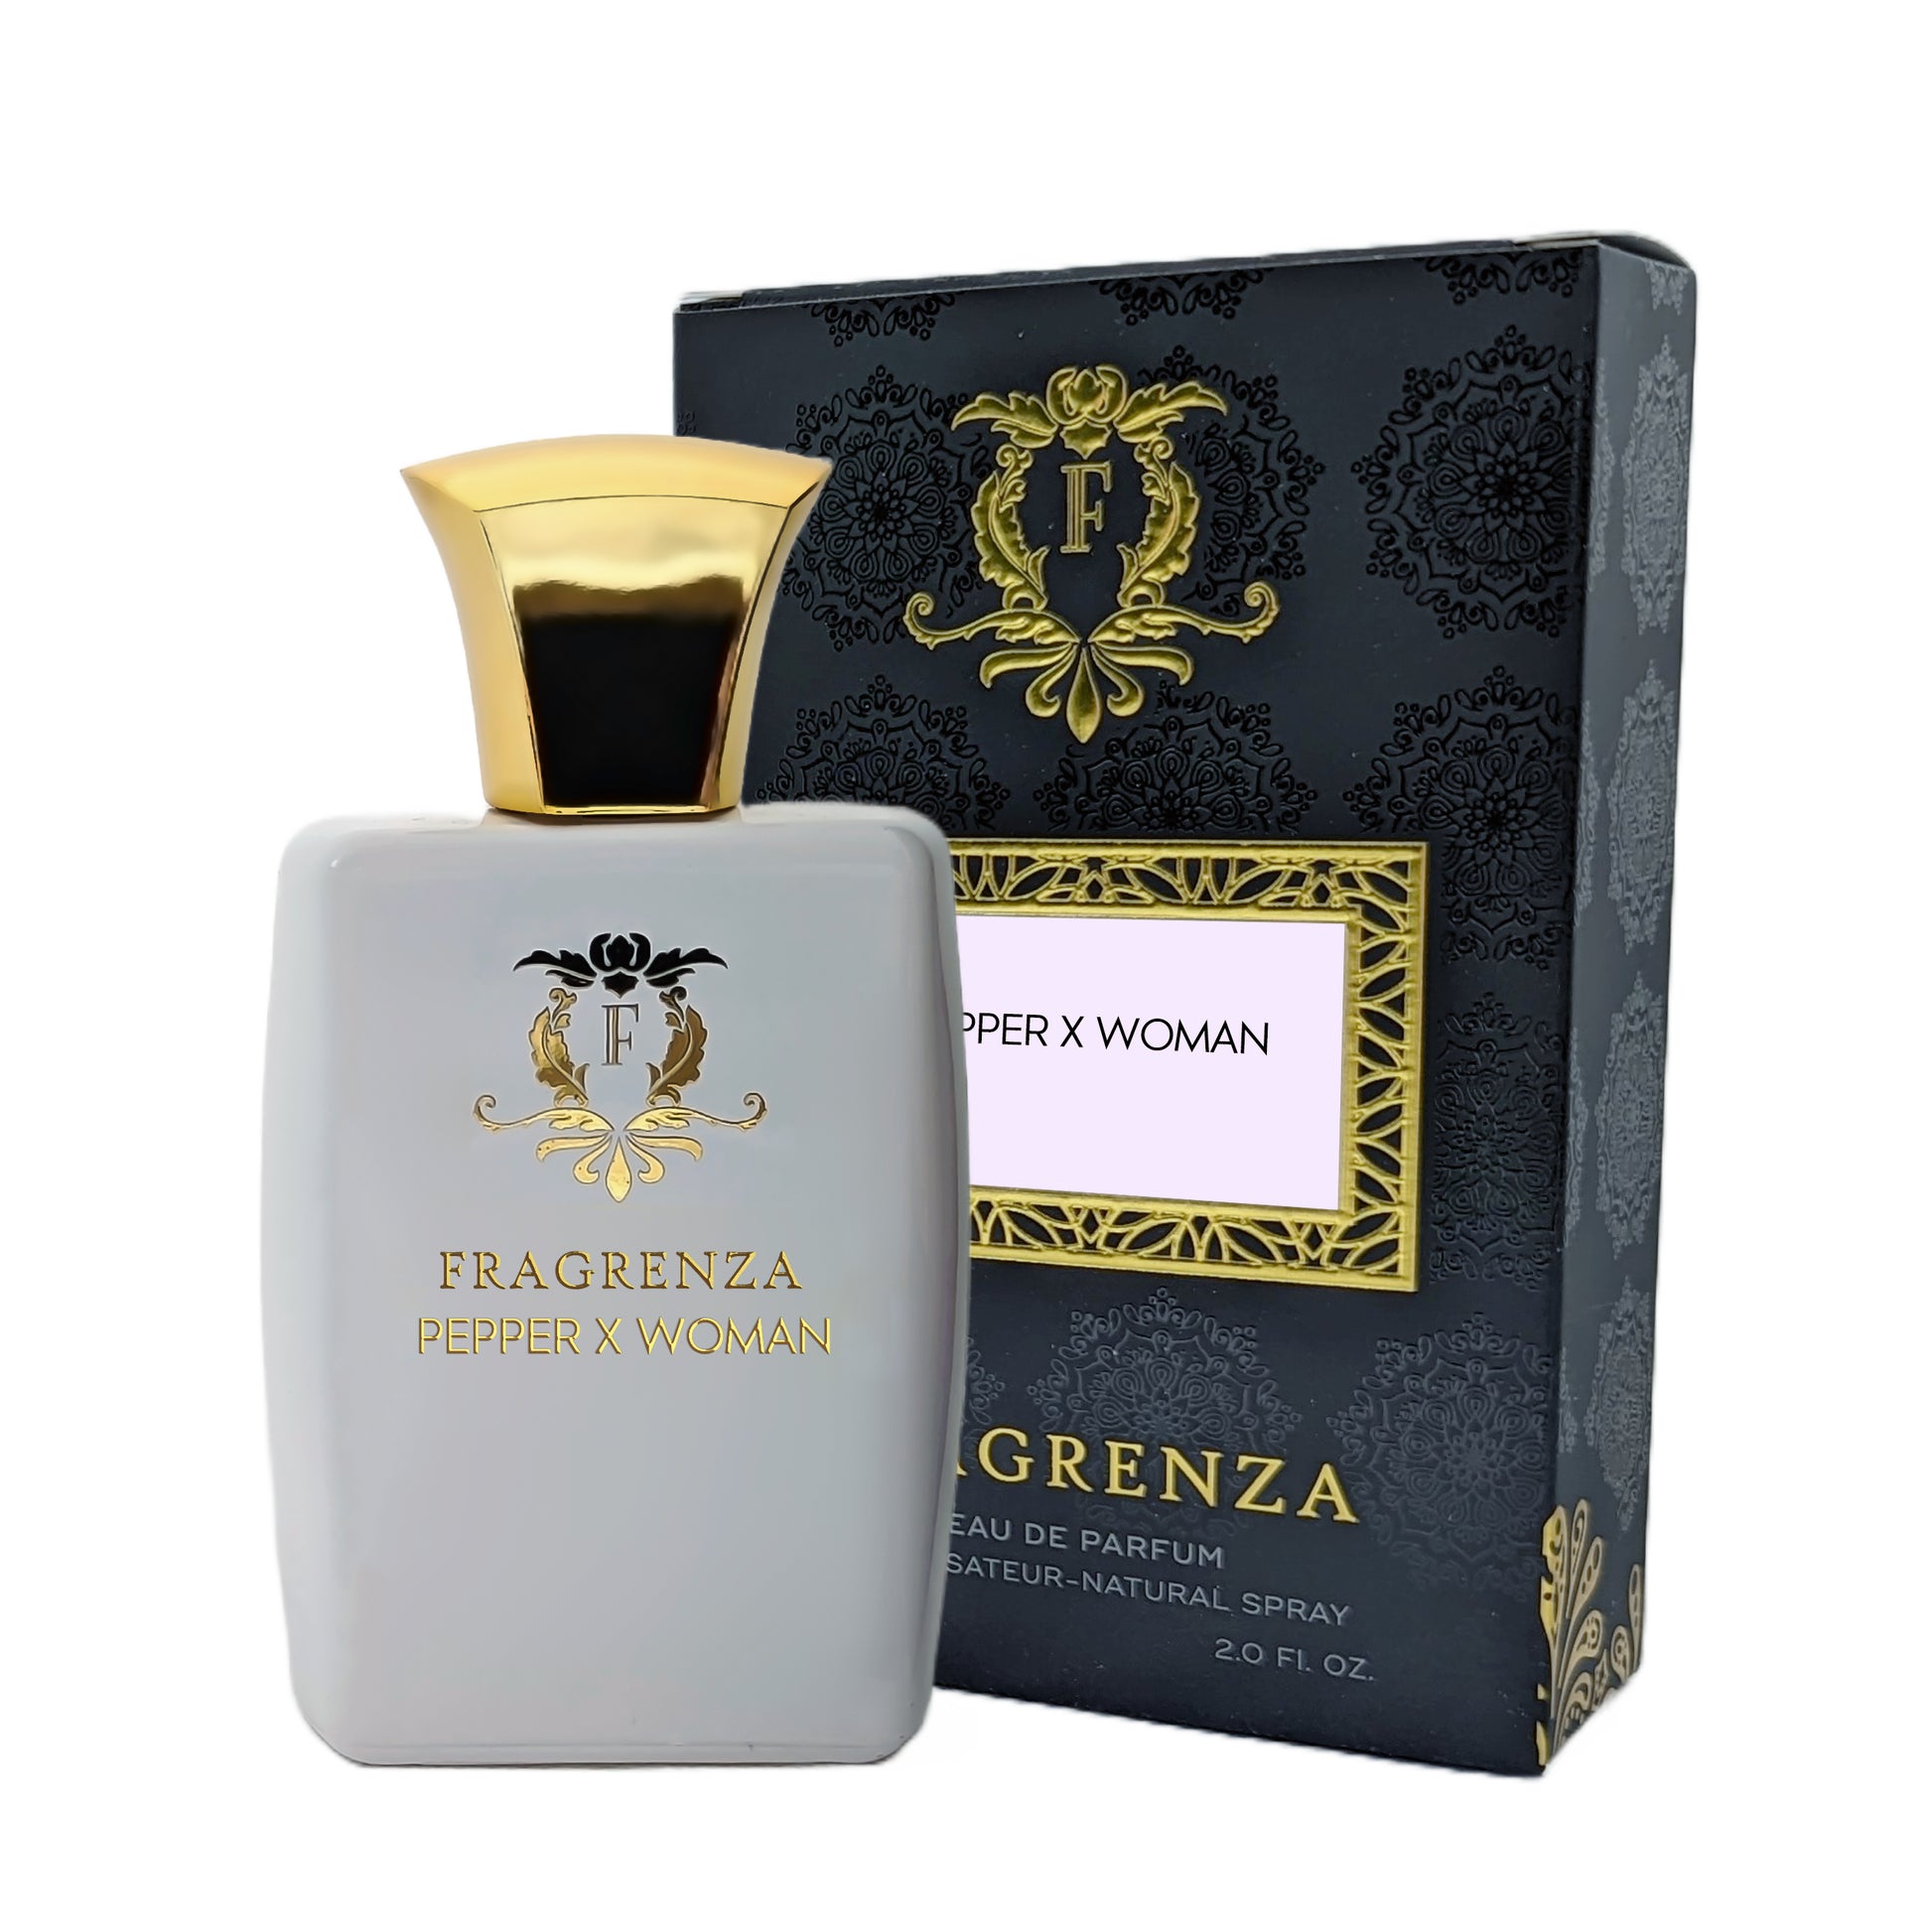 Amouage - Women's Luxury Fragrance Sample Gift Set